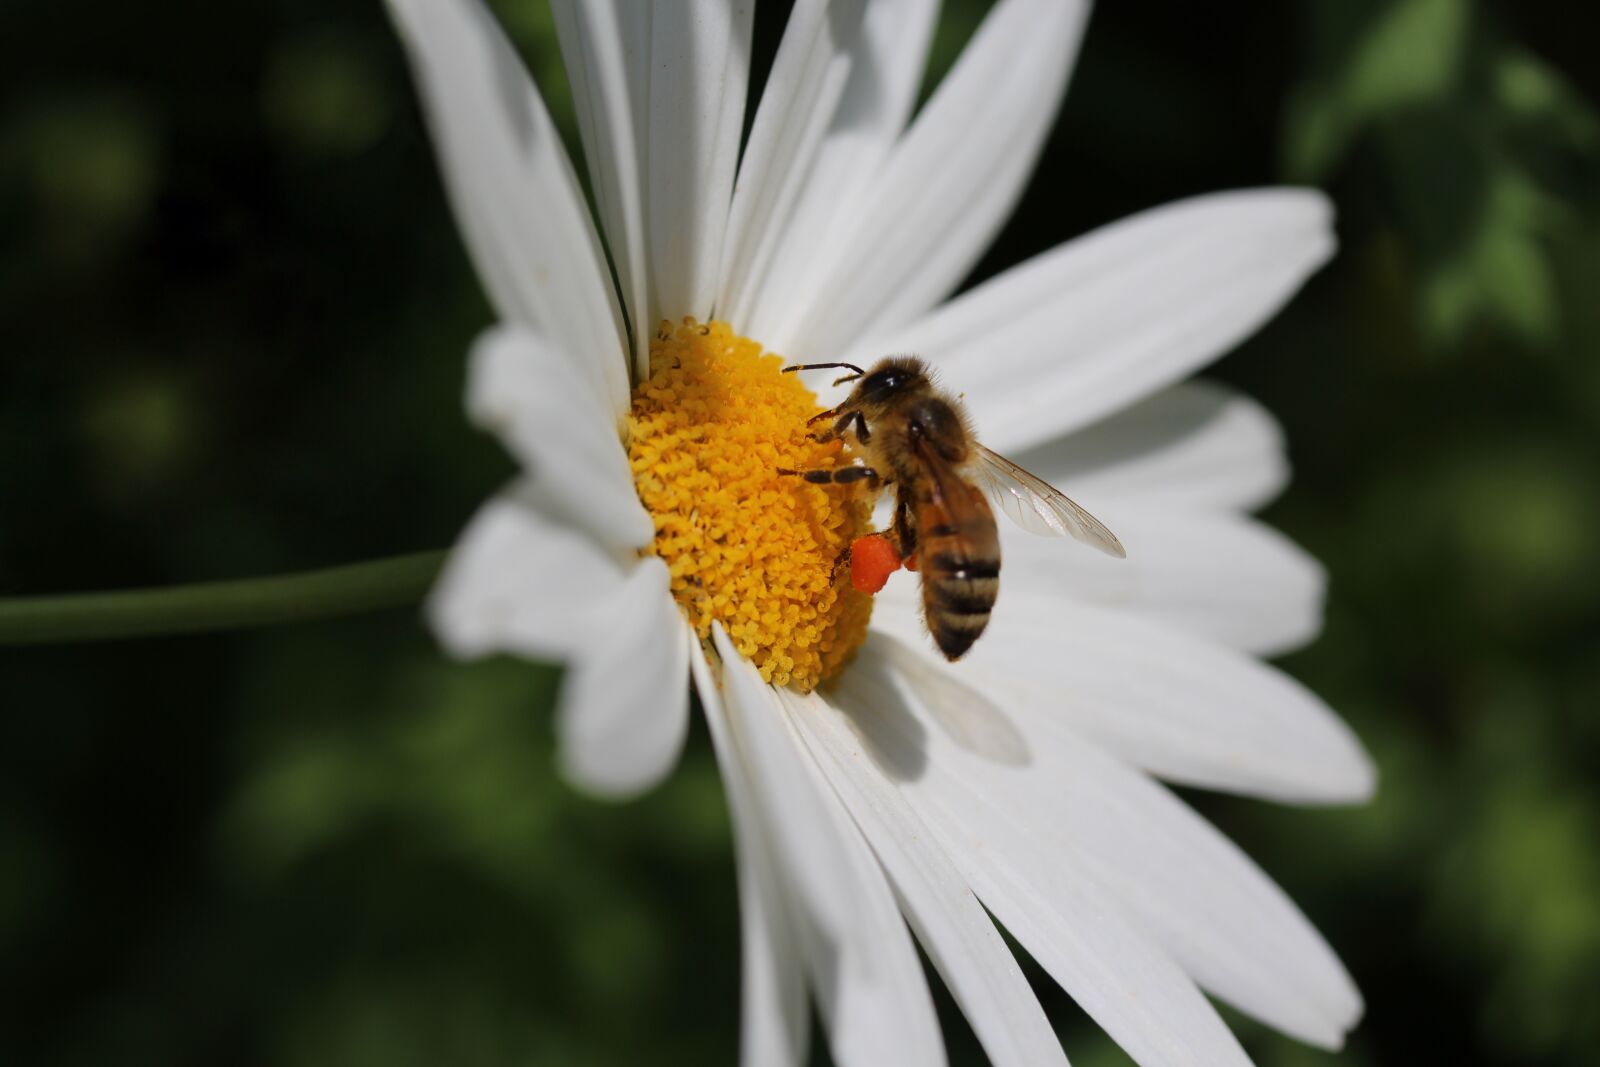 Canon EOS 700D (EOS Rebel T5i / EOS Kiss X7i) + Canon EF-S 60mm F2.8 Macro USM sample photo. Daisy, honey bee, pollination photography